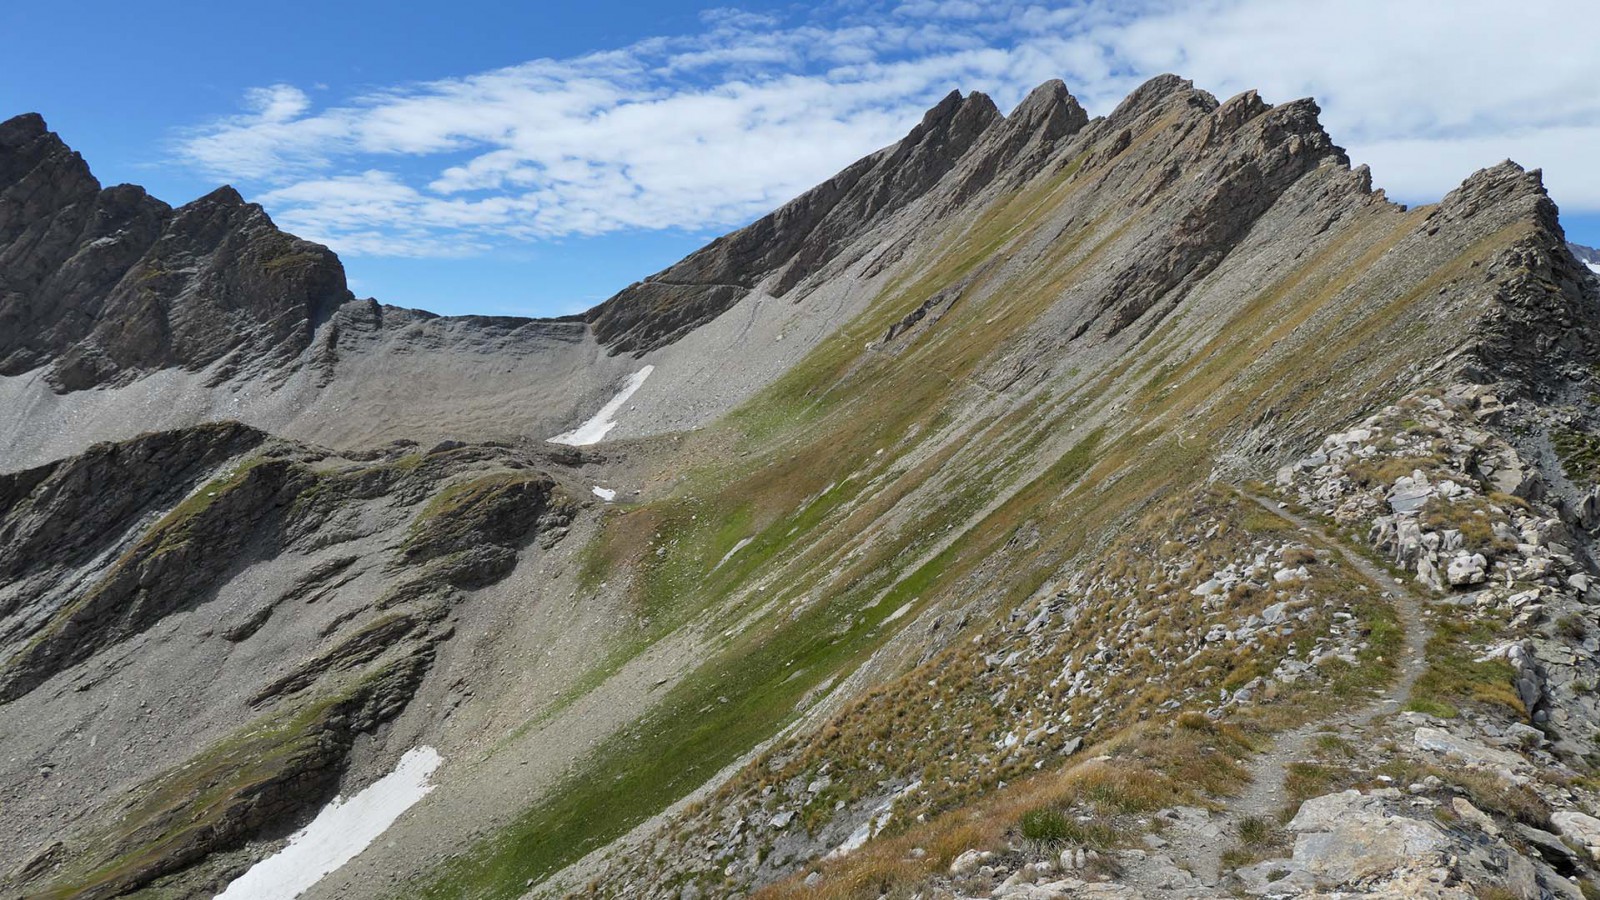  Berrio Blanc / Mont Nix : sentier étroit, pas vraiment technique mais qui traverse une pente marquée (expo max juste après le col du Berrio Blanc) (du Mont Nix vers Berrio Blanc)